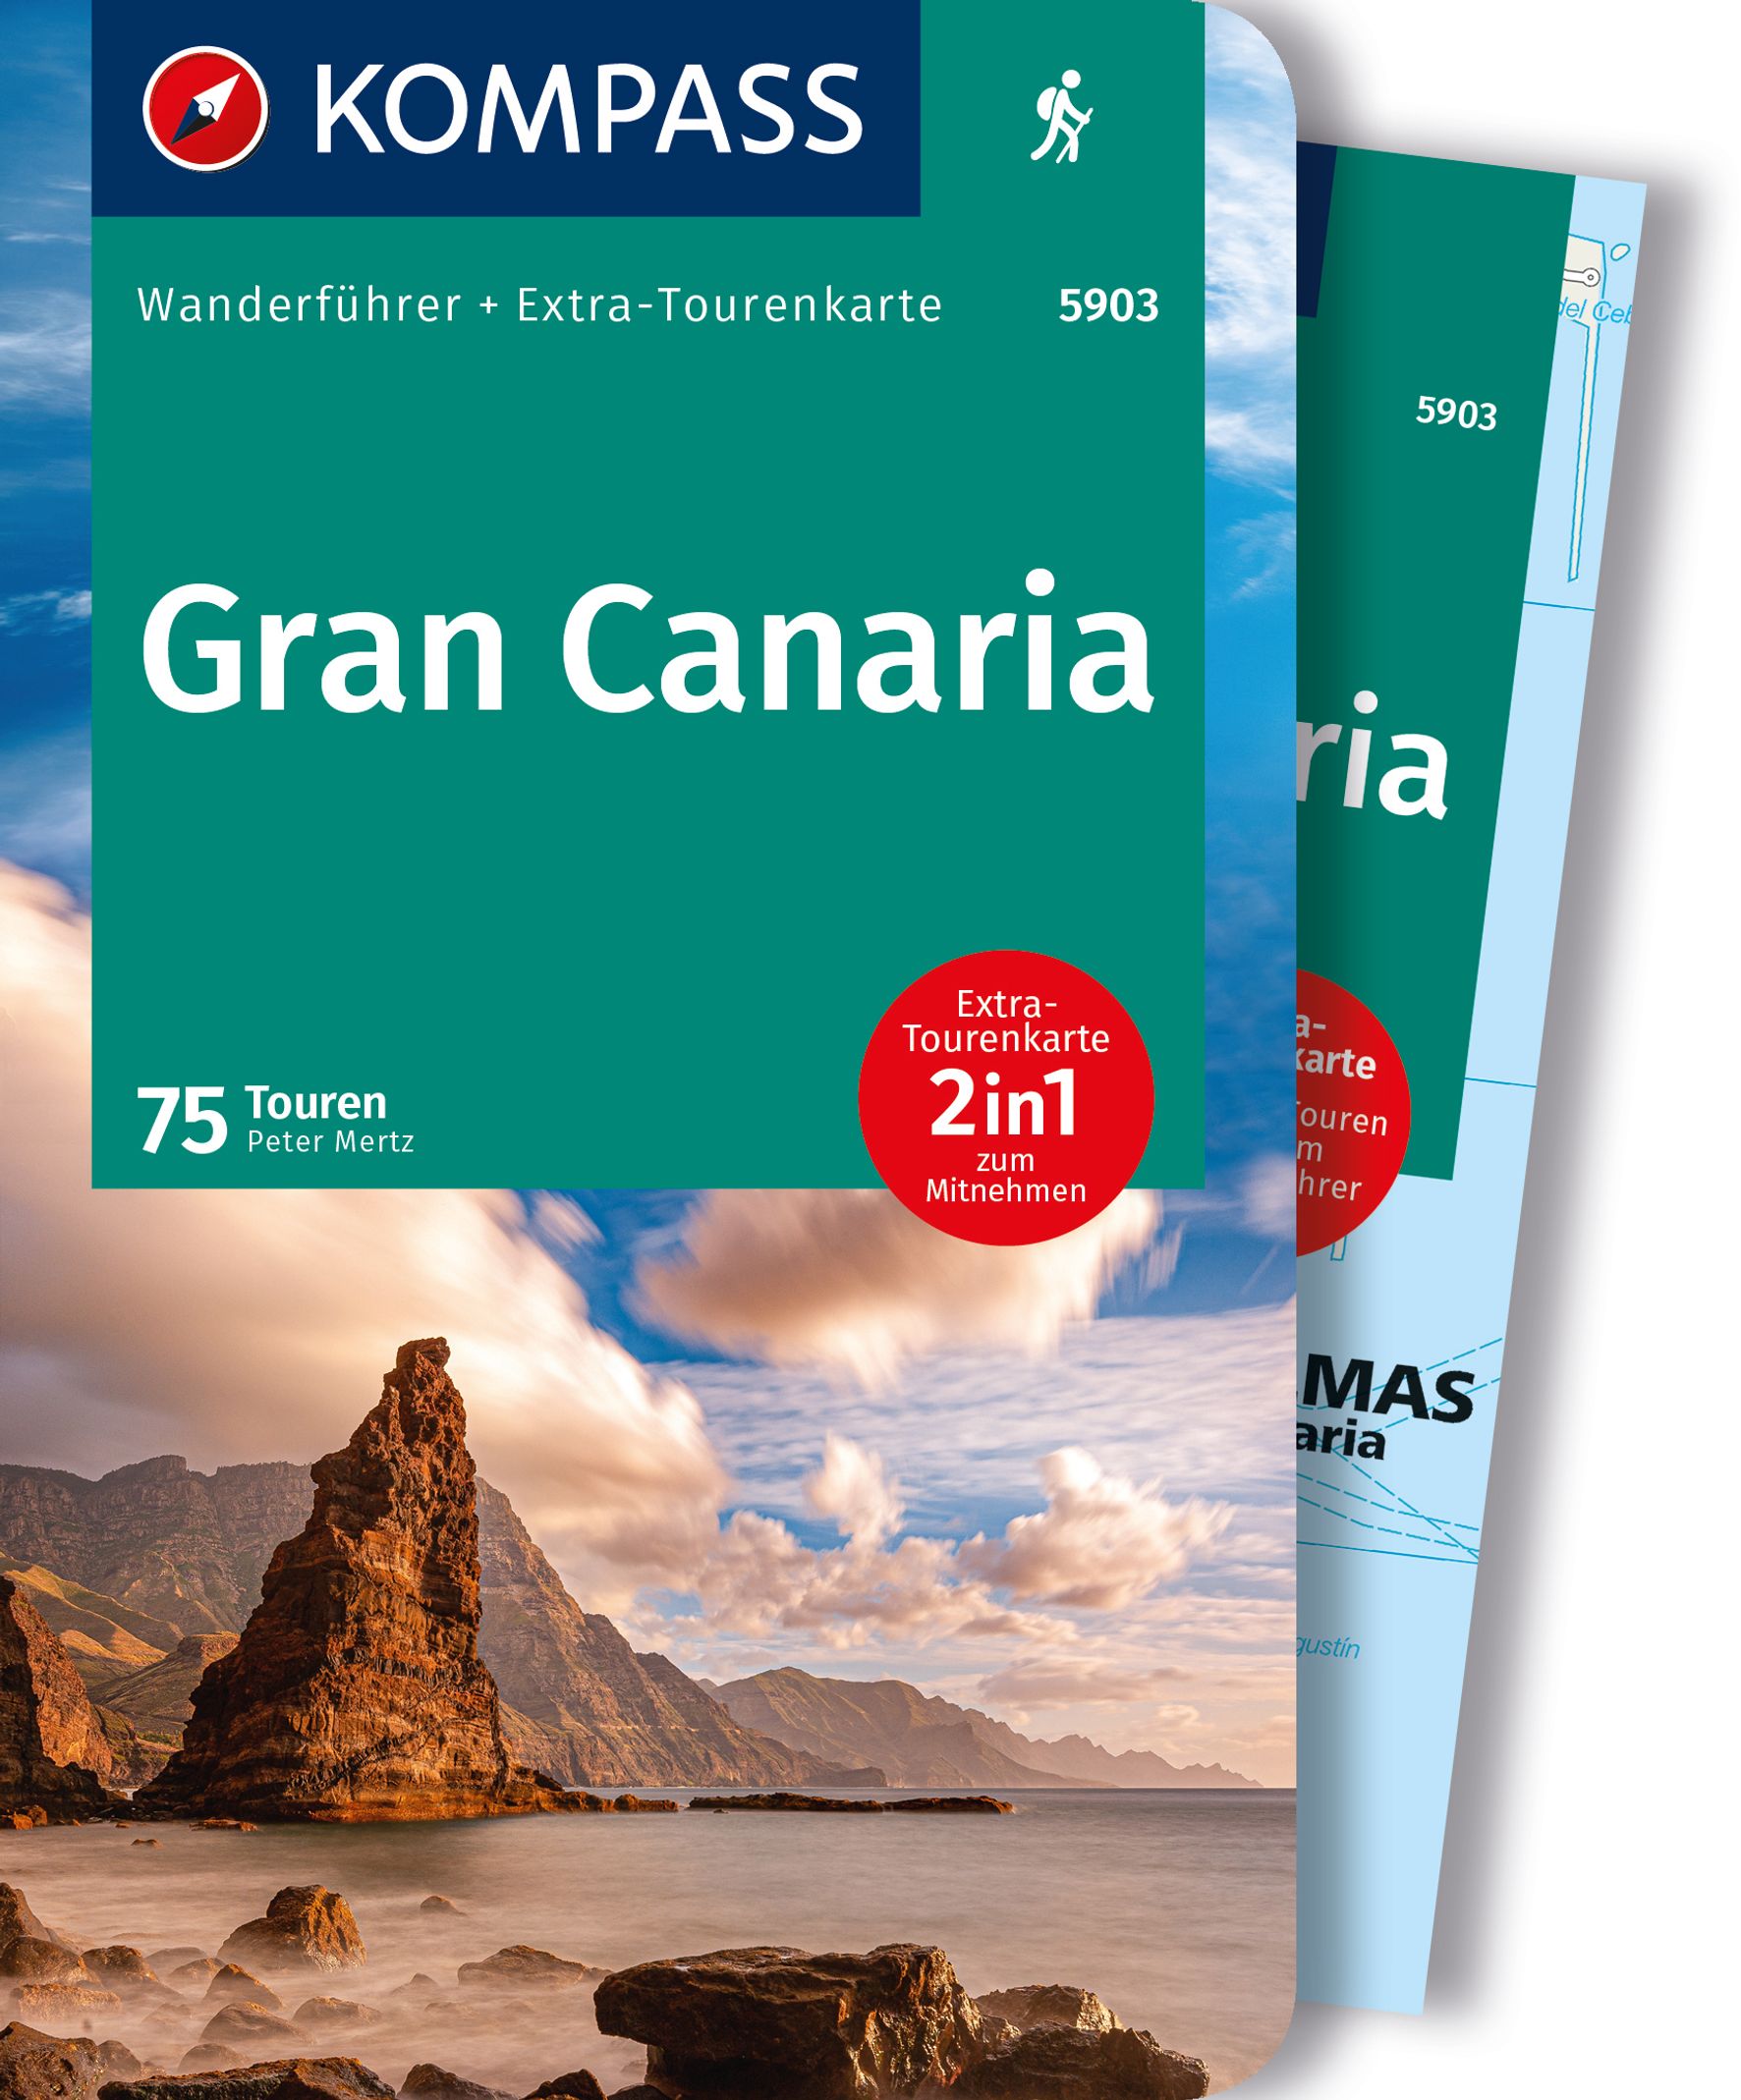 Online bestellen: Wandelgids 5903 Wanderführer Gran Canaria | Kompass